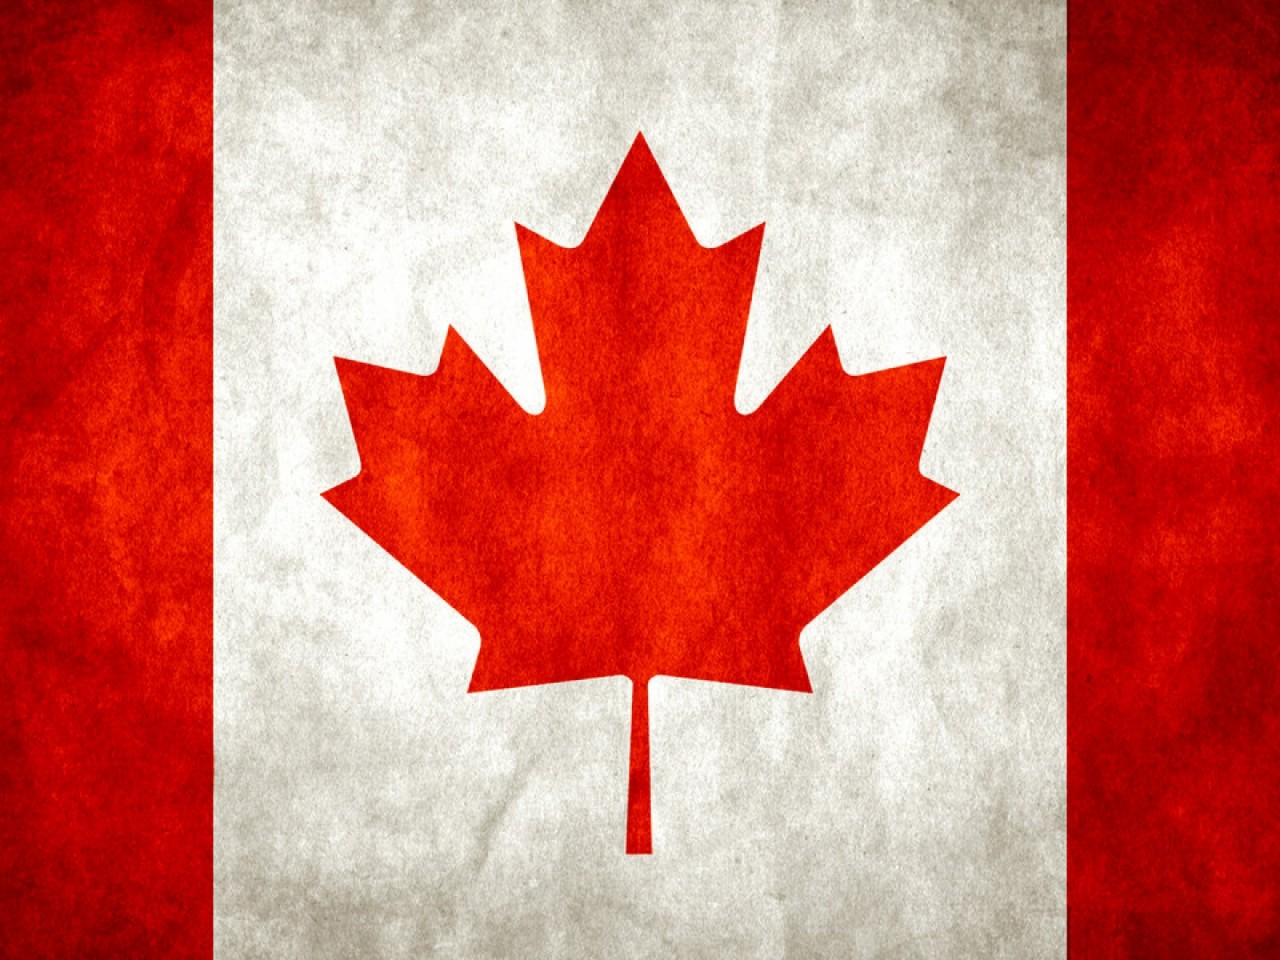 カナダの旗の壁紙,カエデの葉,赤,葉,木,国旗